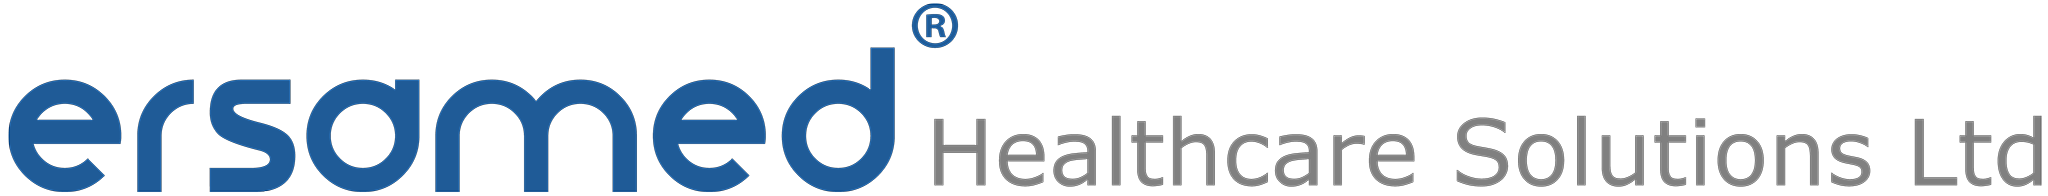 Ersamed Özel Sağlık Hizmetleri Ltd. Resmi Logosu